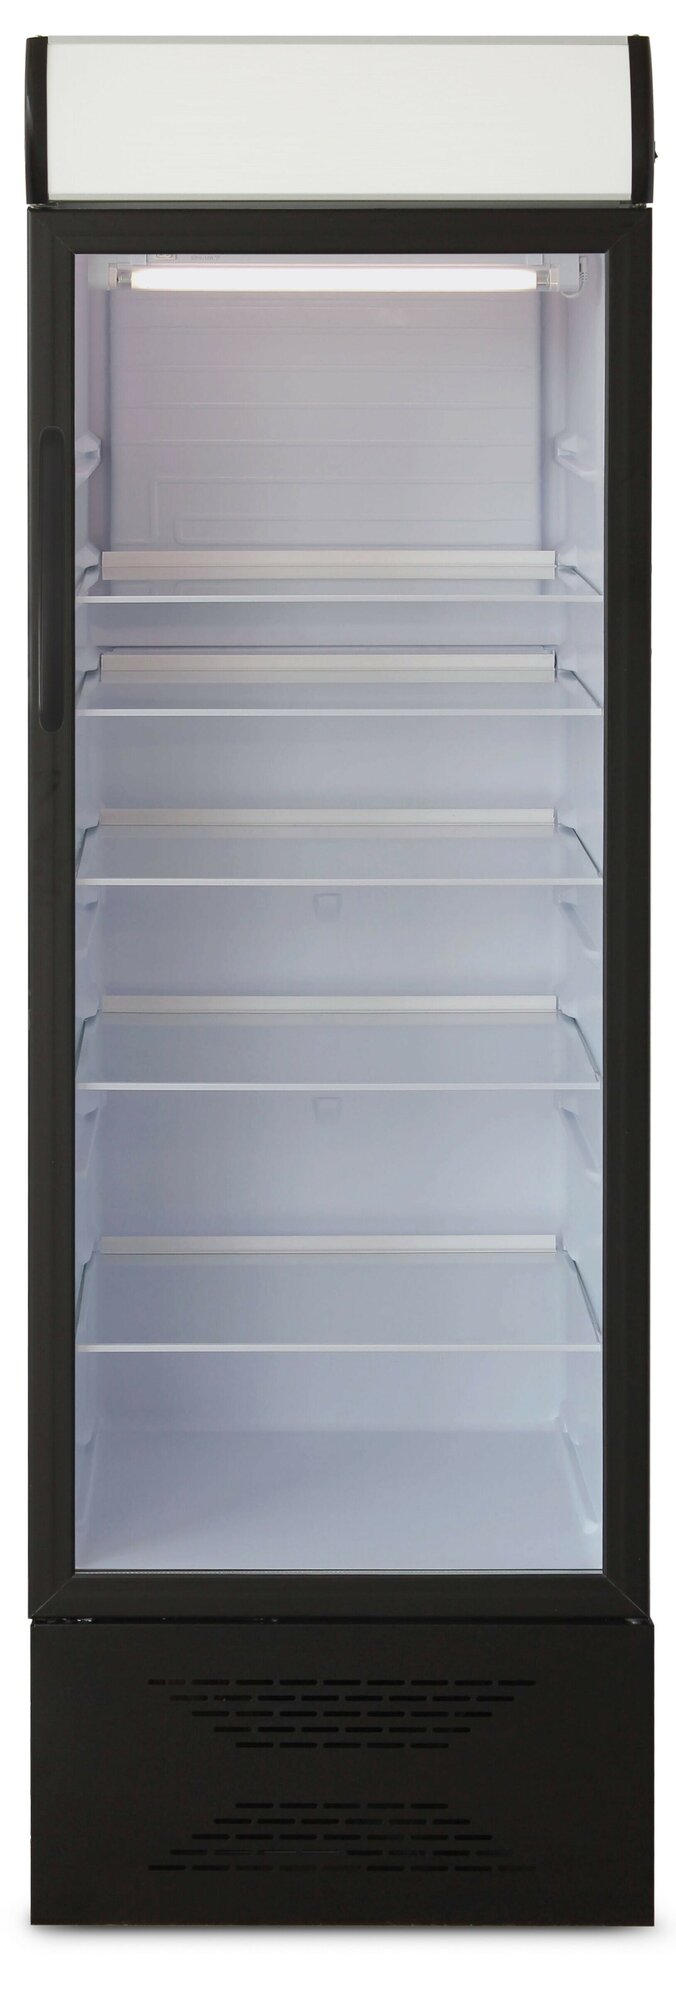 Холодильник Бирюса В310Р